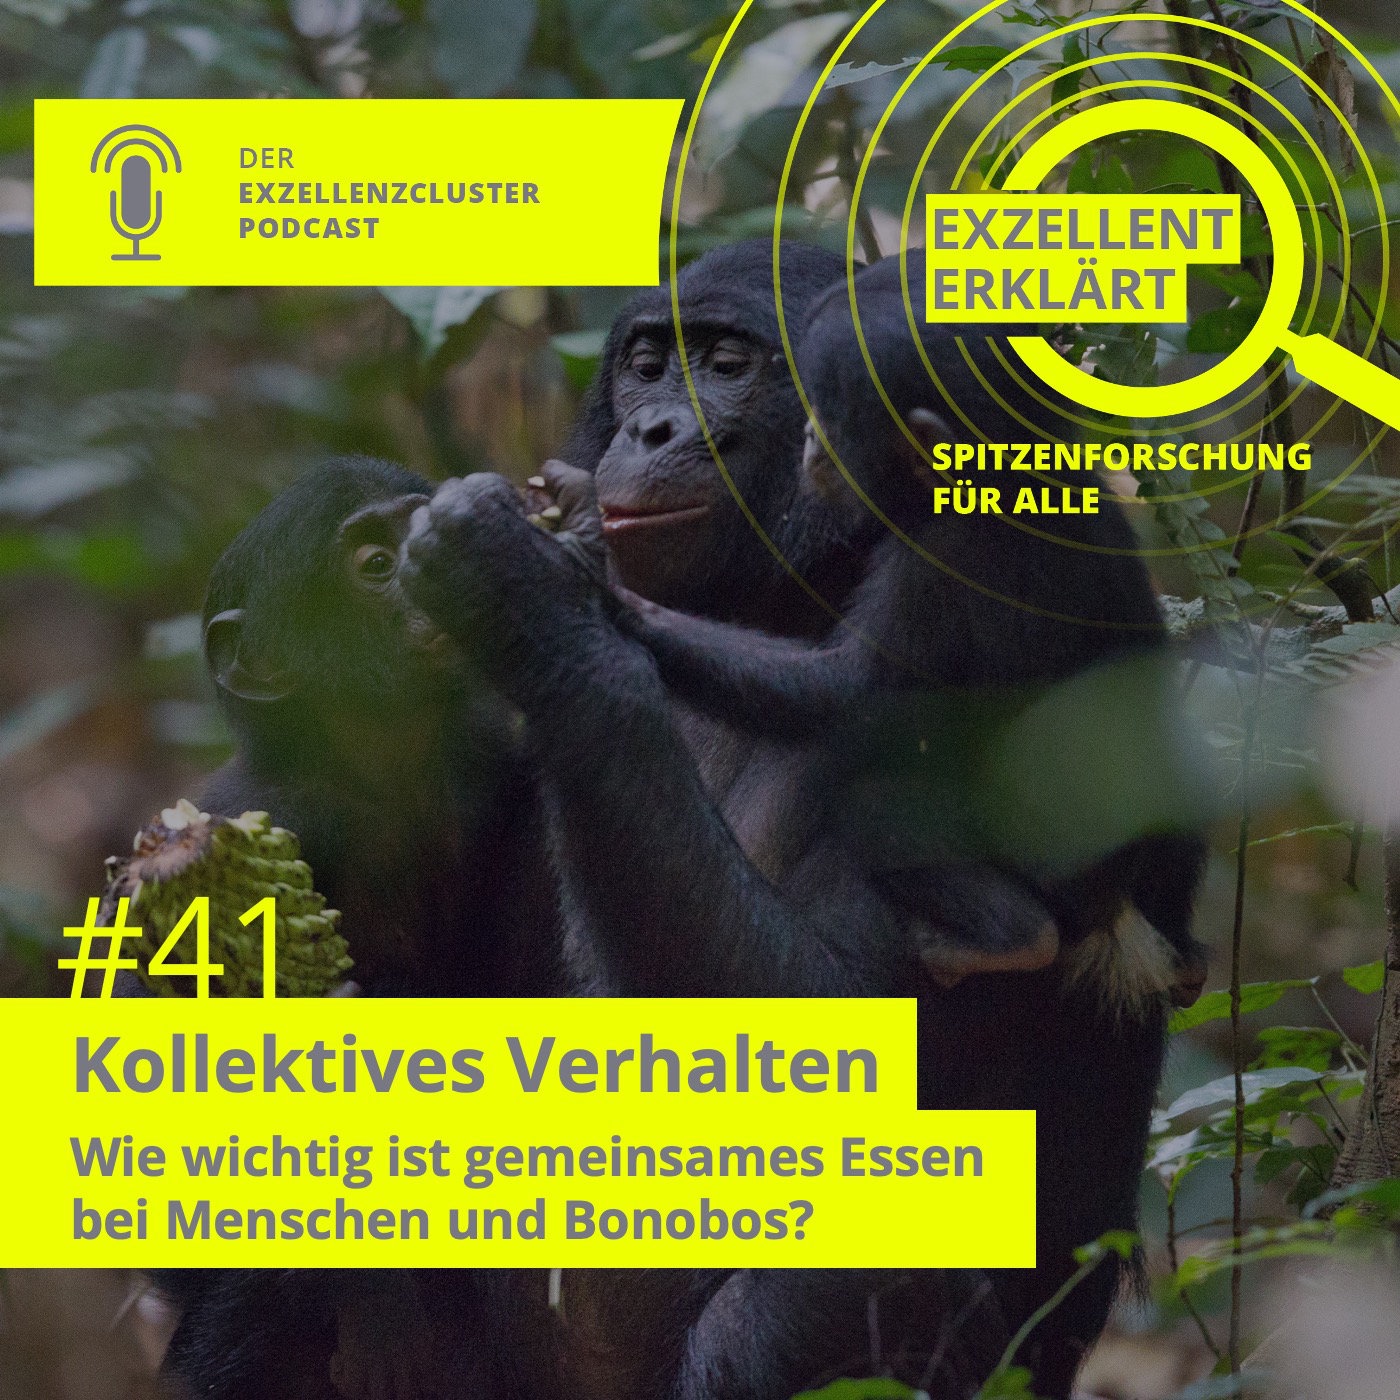 Wie wichtig ist gemeinsames Essen bei Menschen und Bonobos?